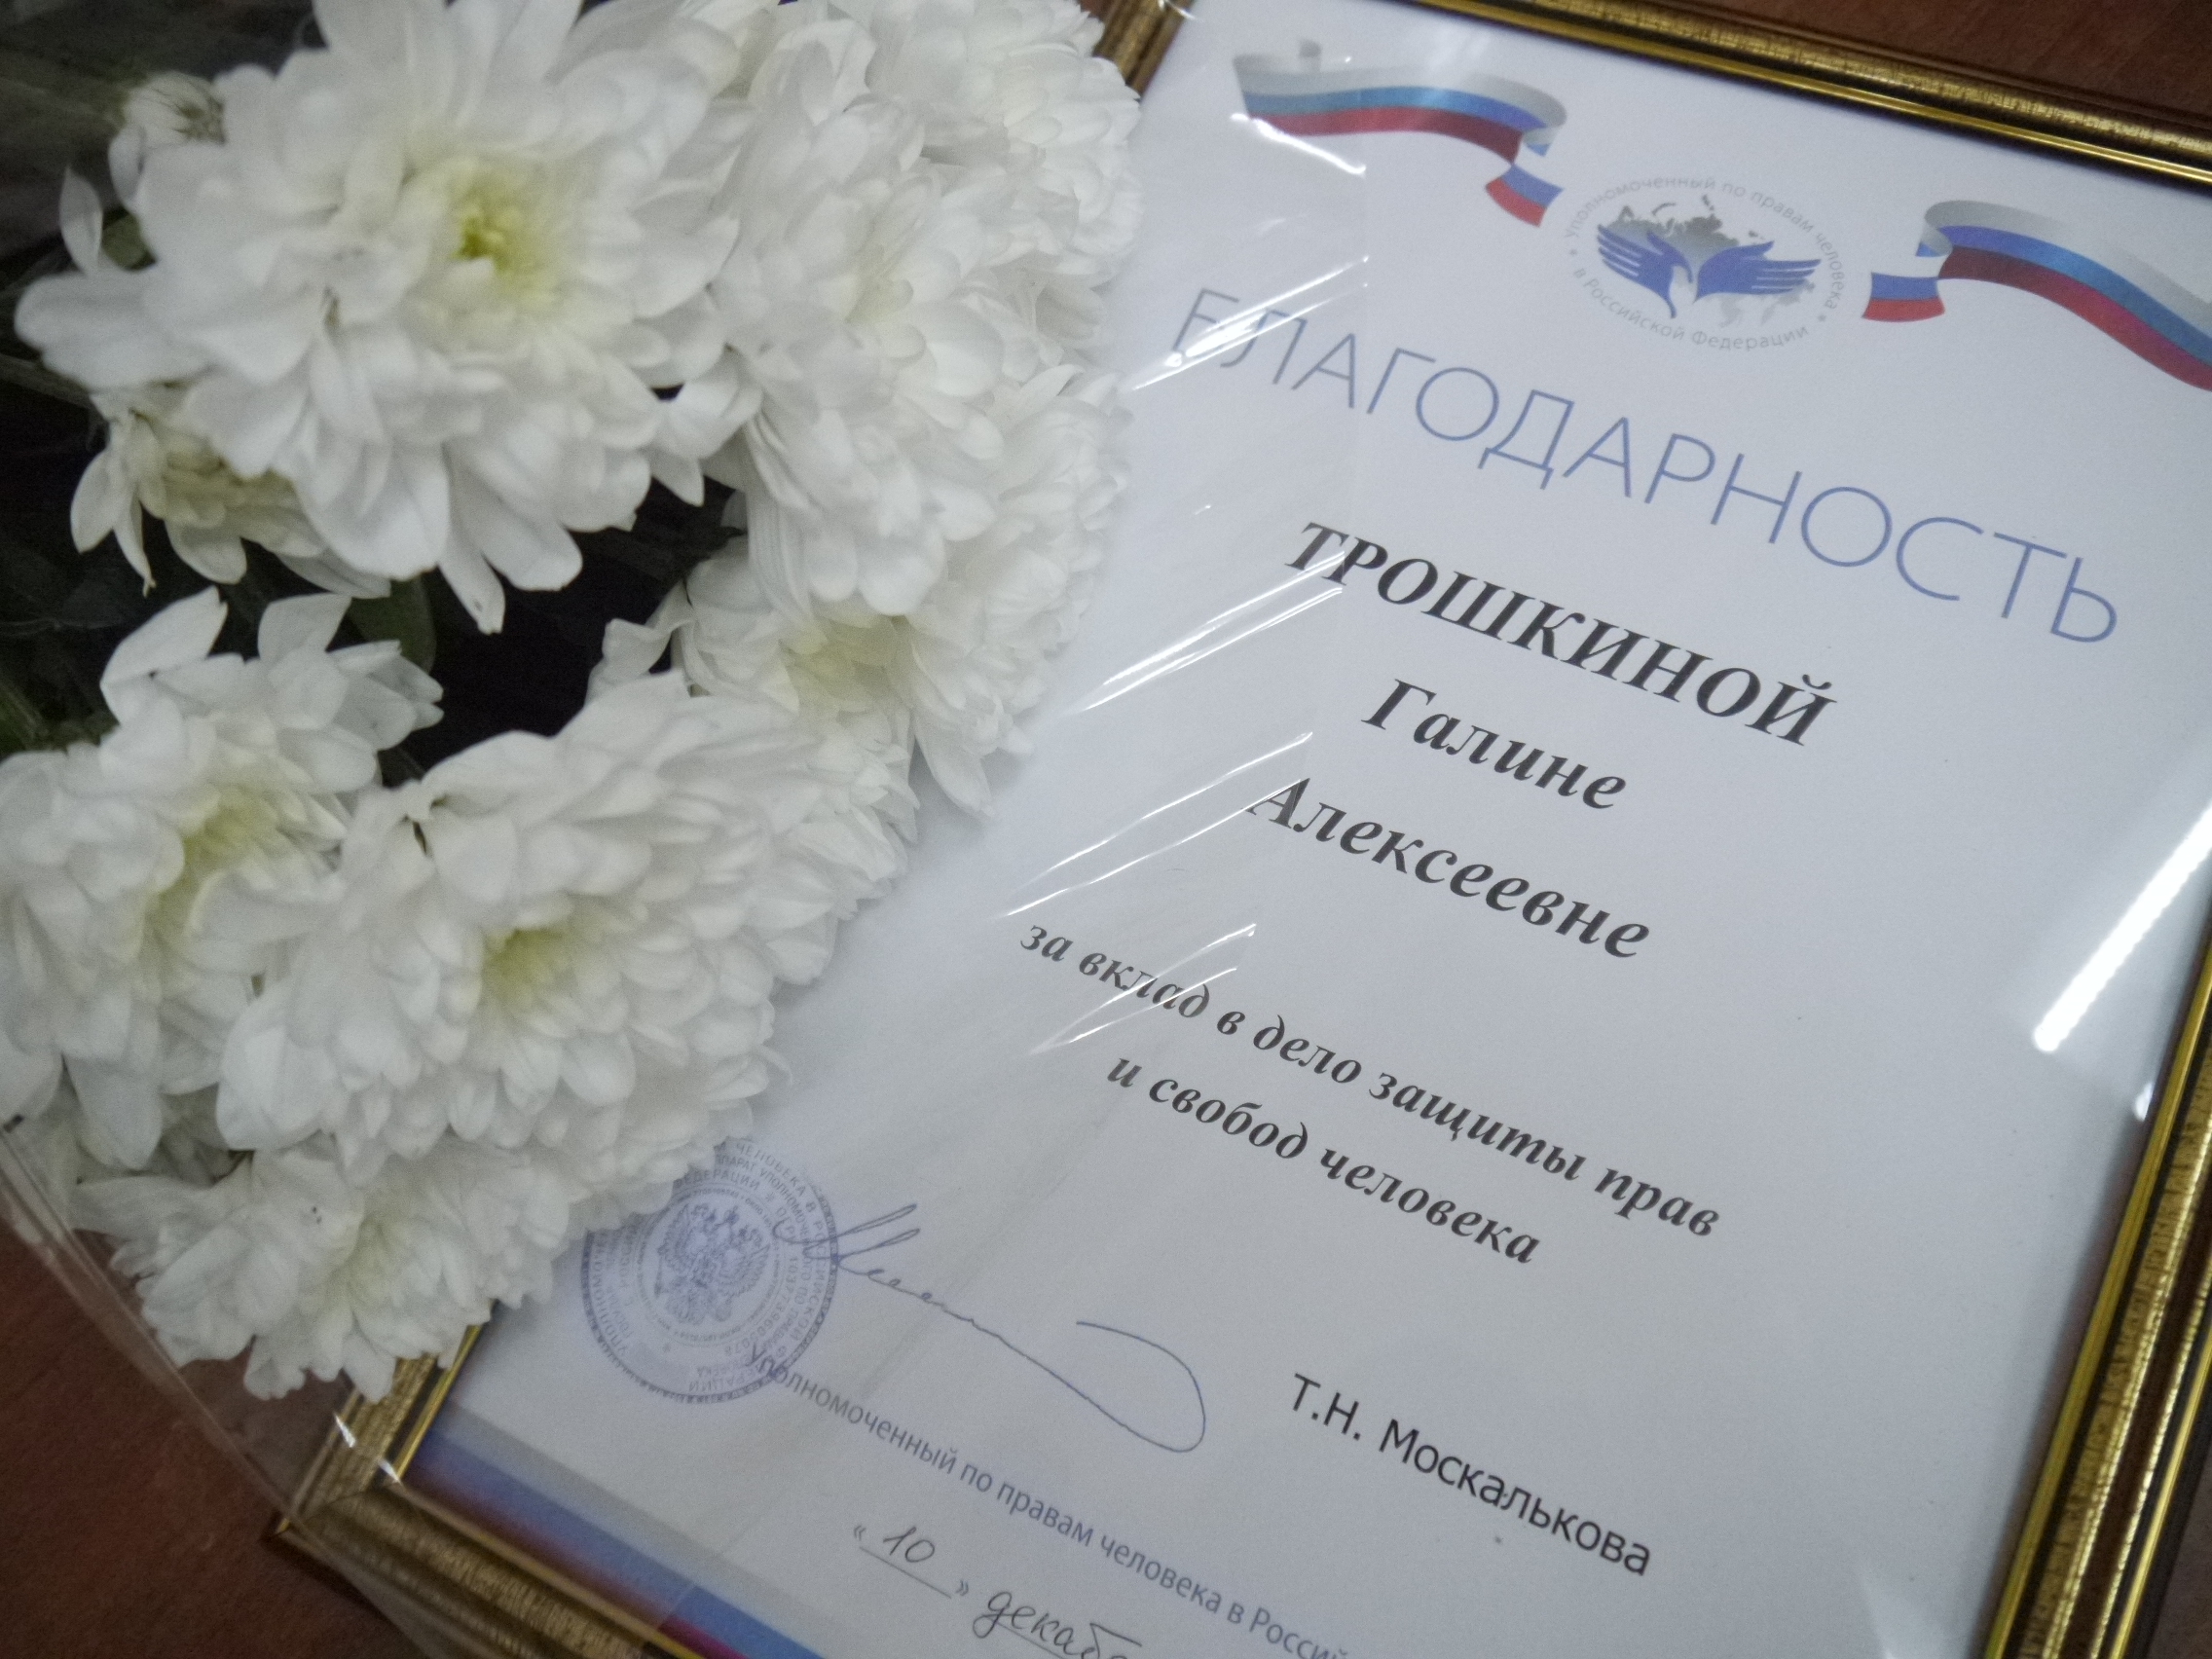 Федеральный омбудсмен отметила заслуги Галины Алексеевны Трошкиной